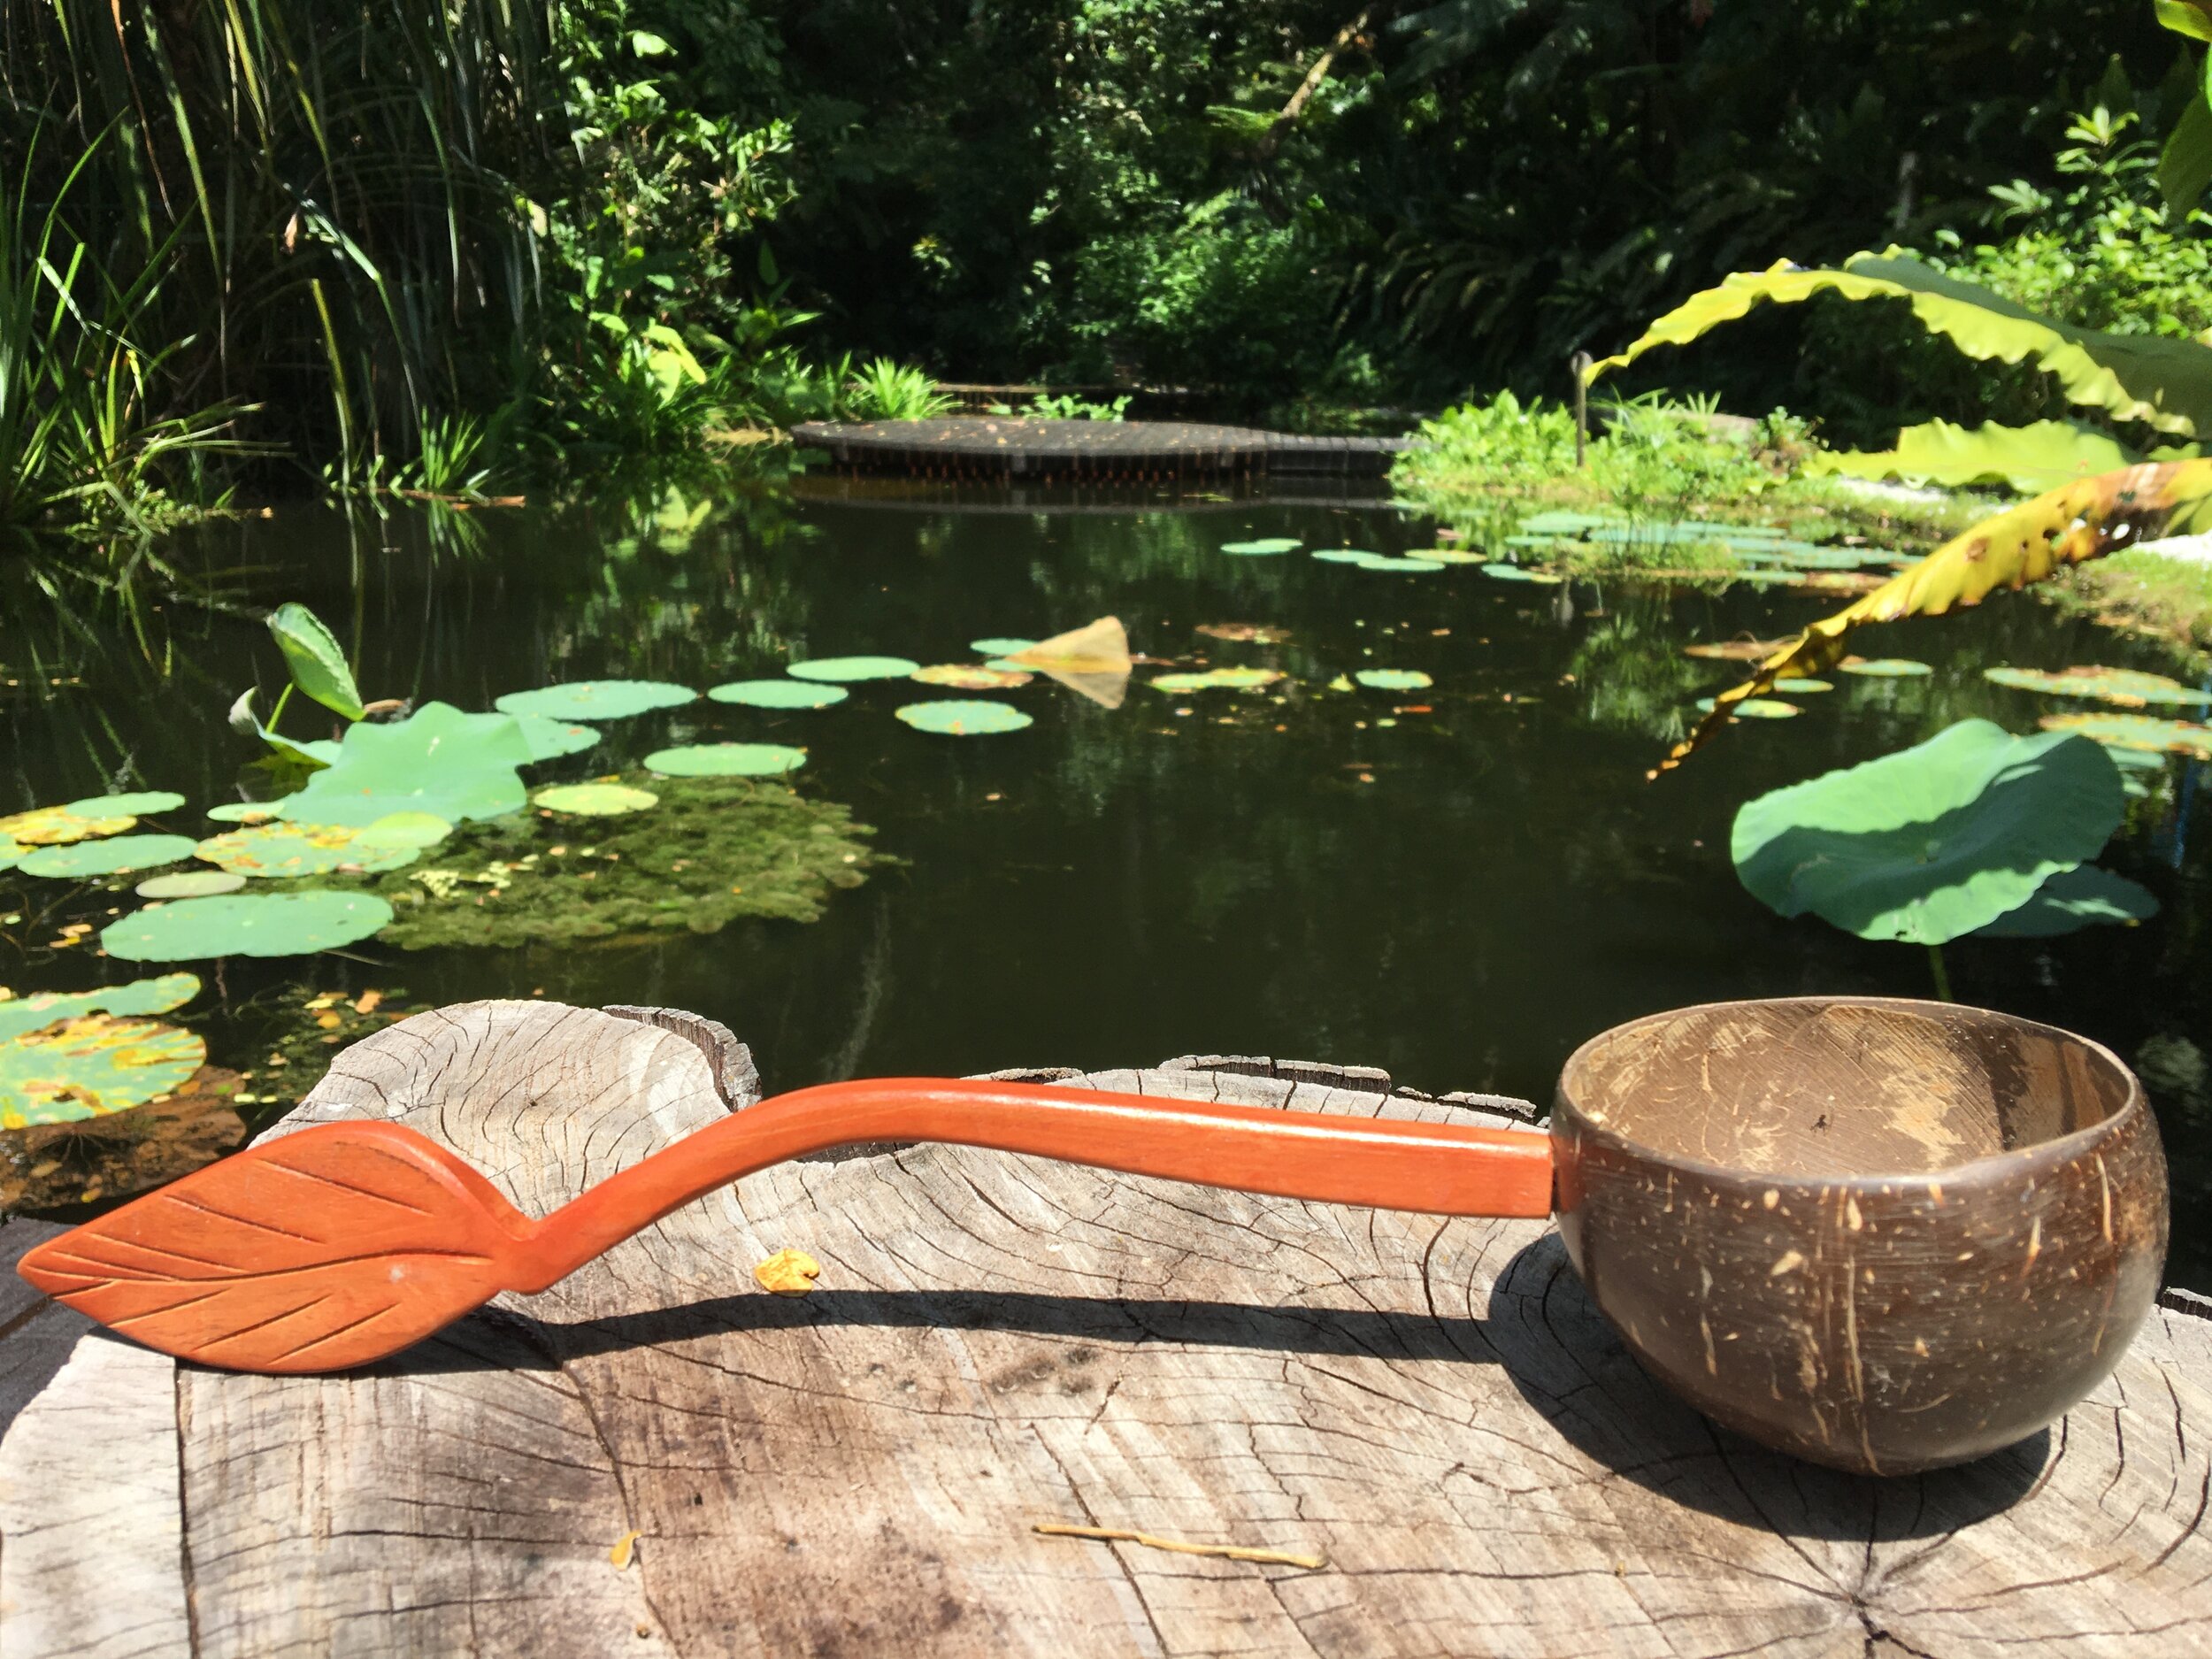 coconut-bowl-ladle-tropical-spice-garden